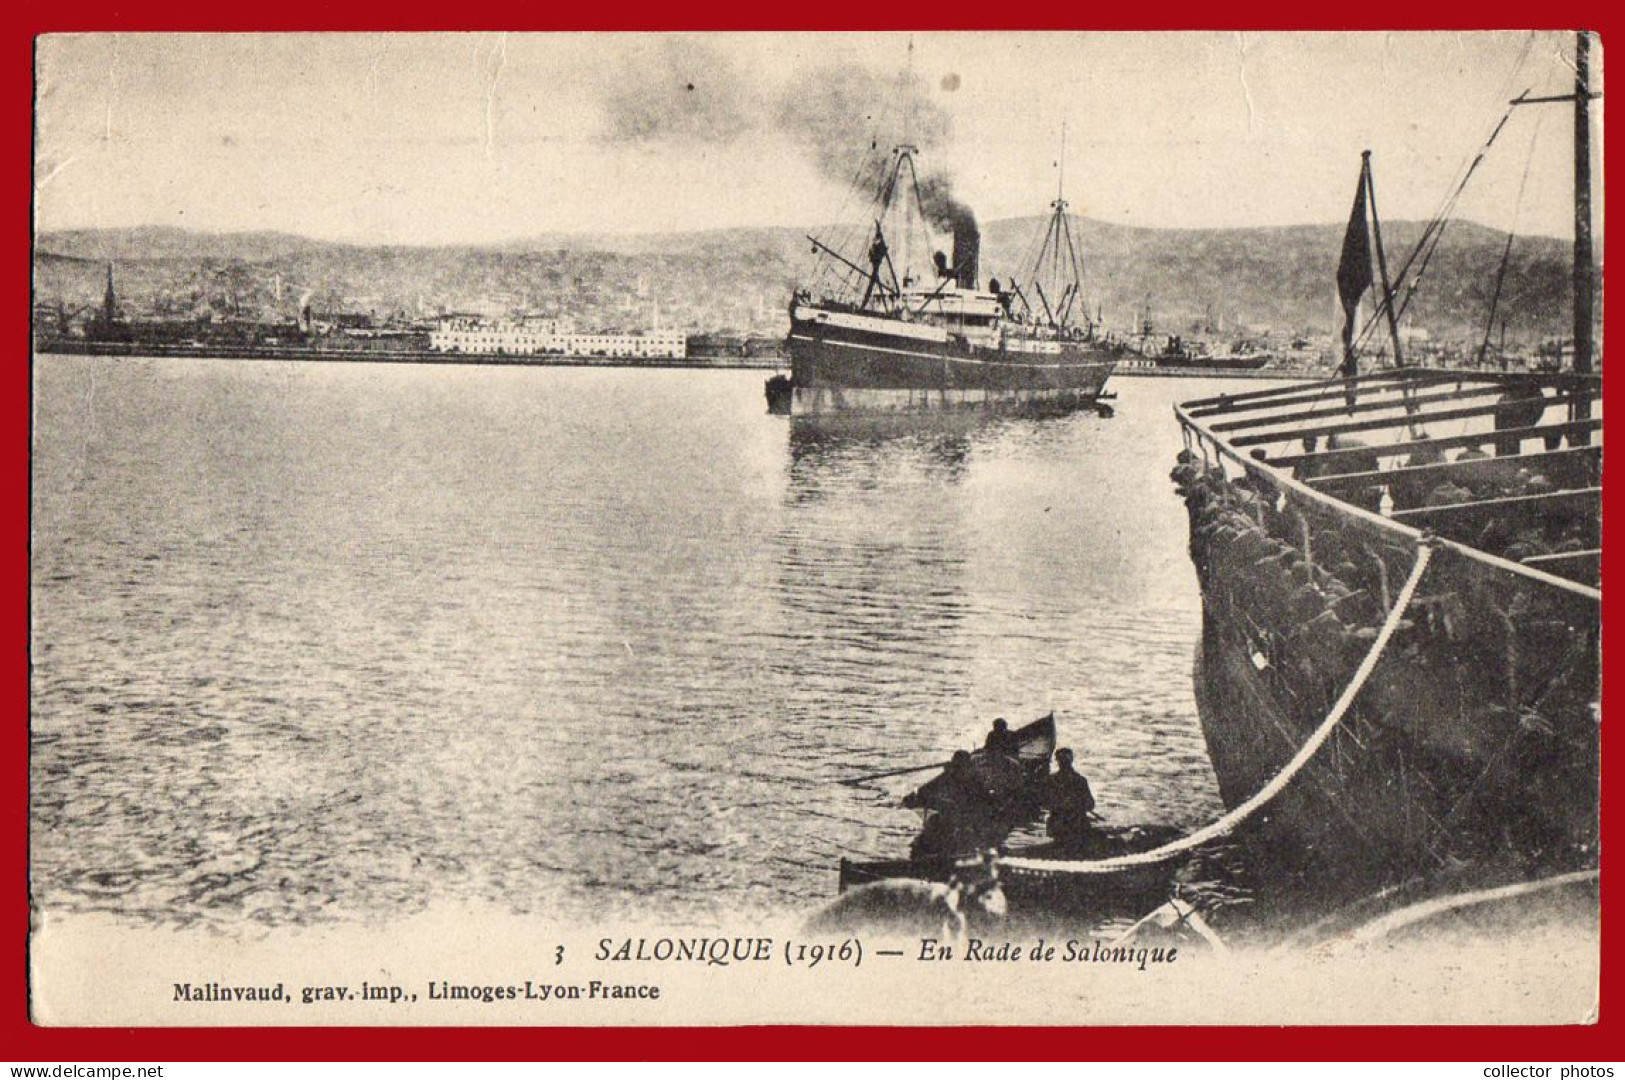 THESSALONIKI Salonica Greece 1910s (circa WWI). Lot of 8 vintage used postcards [de133]